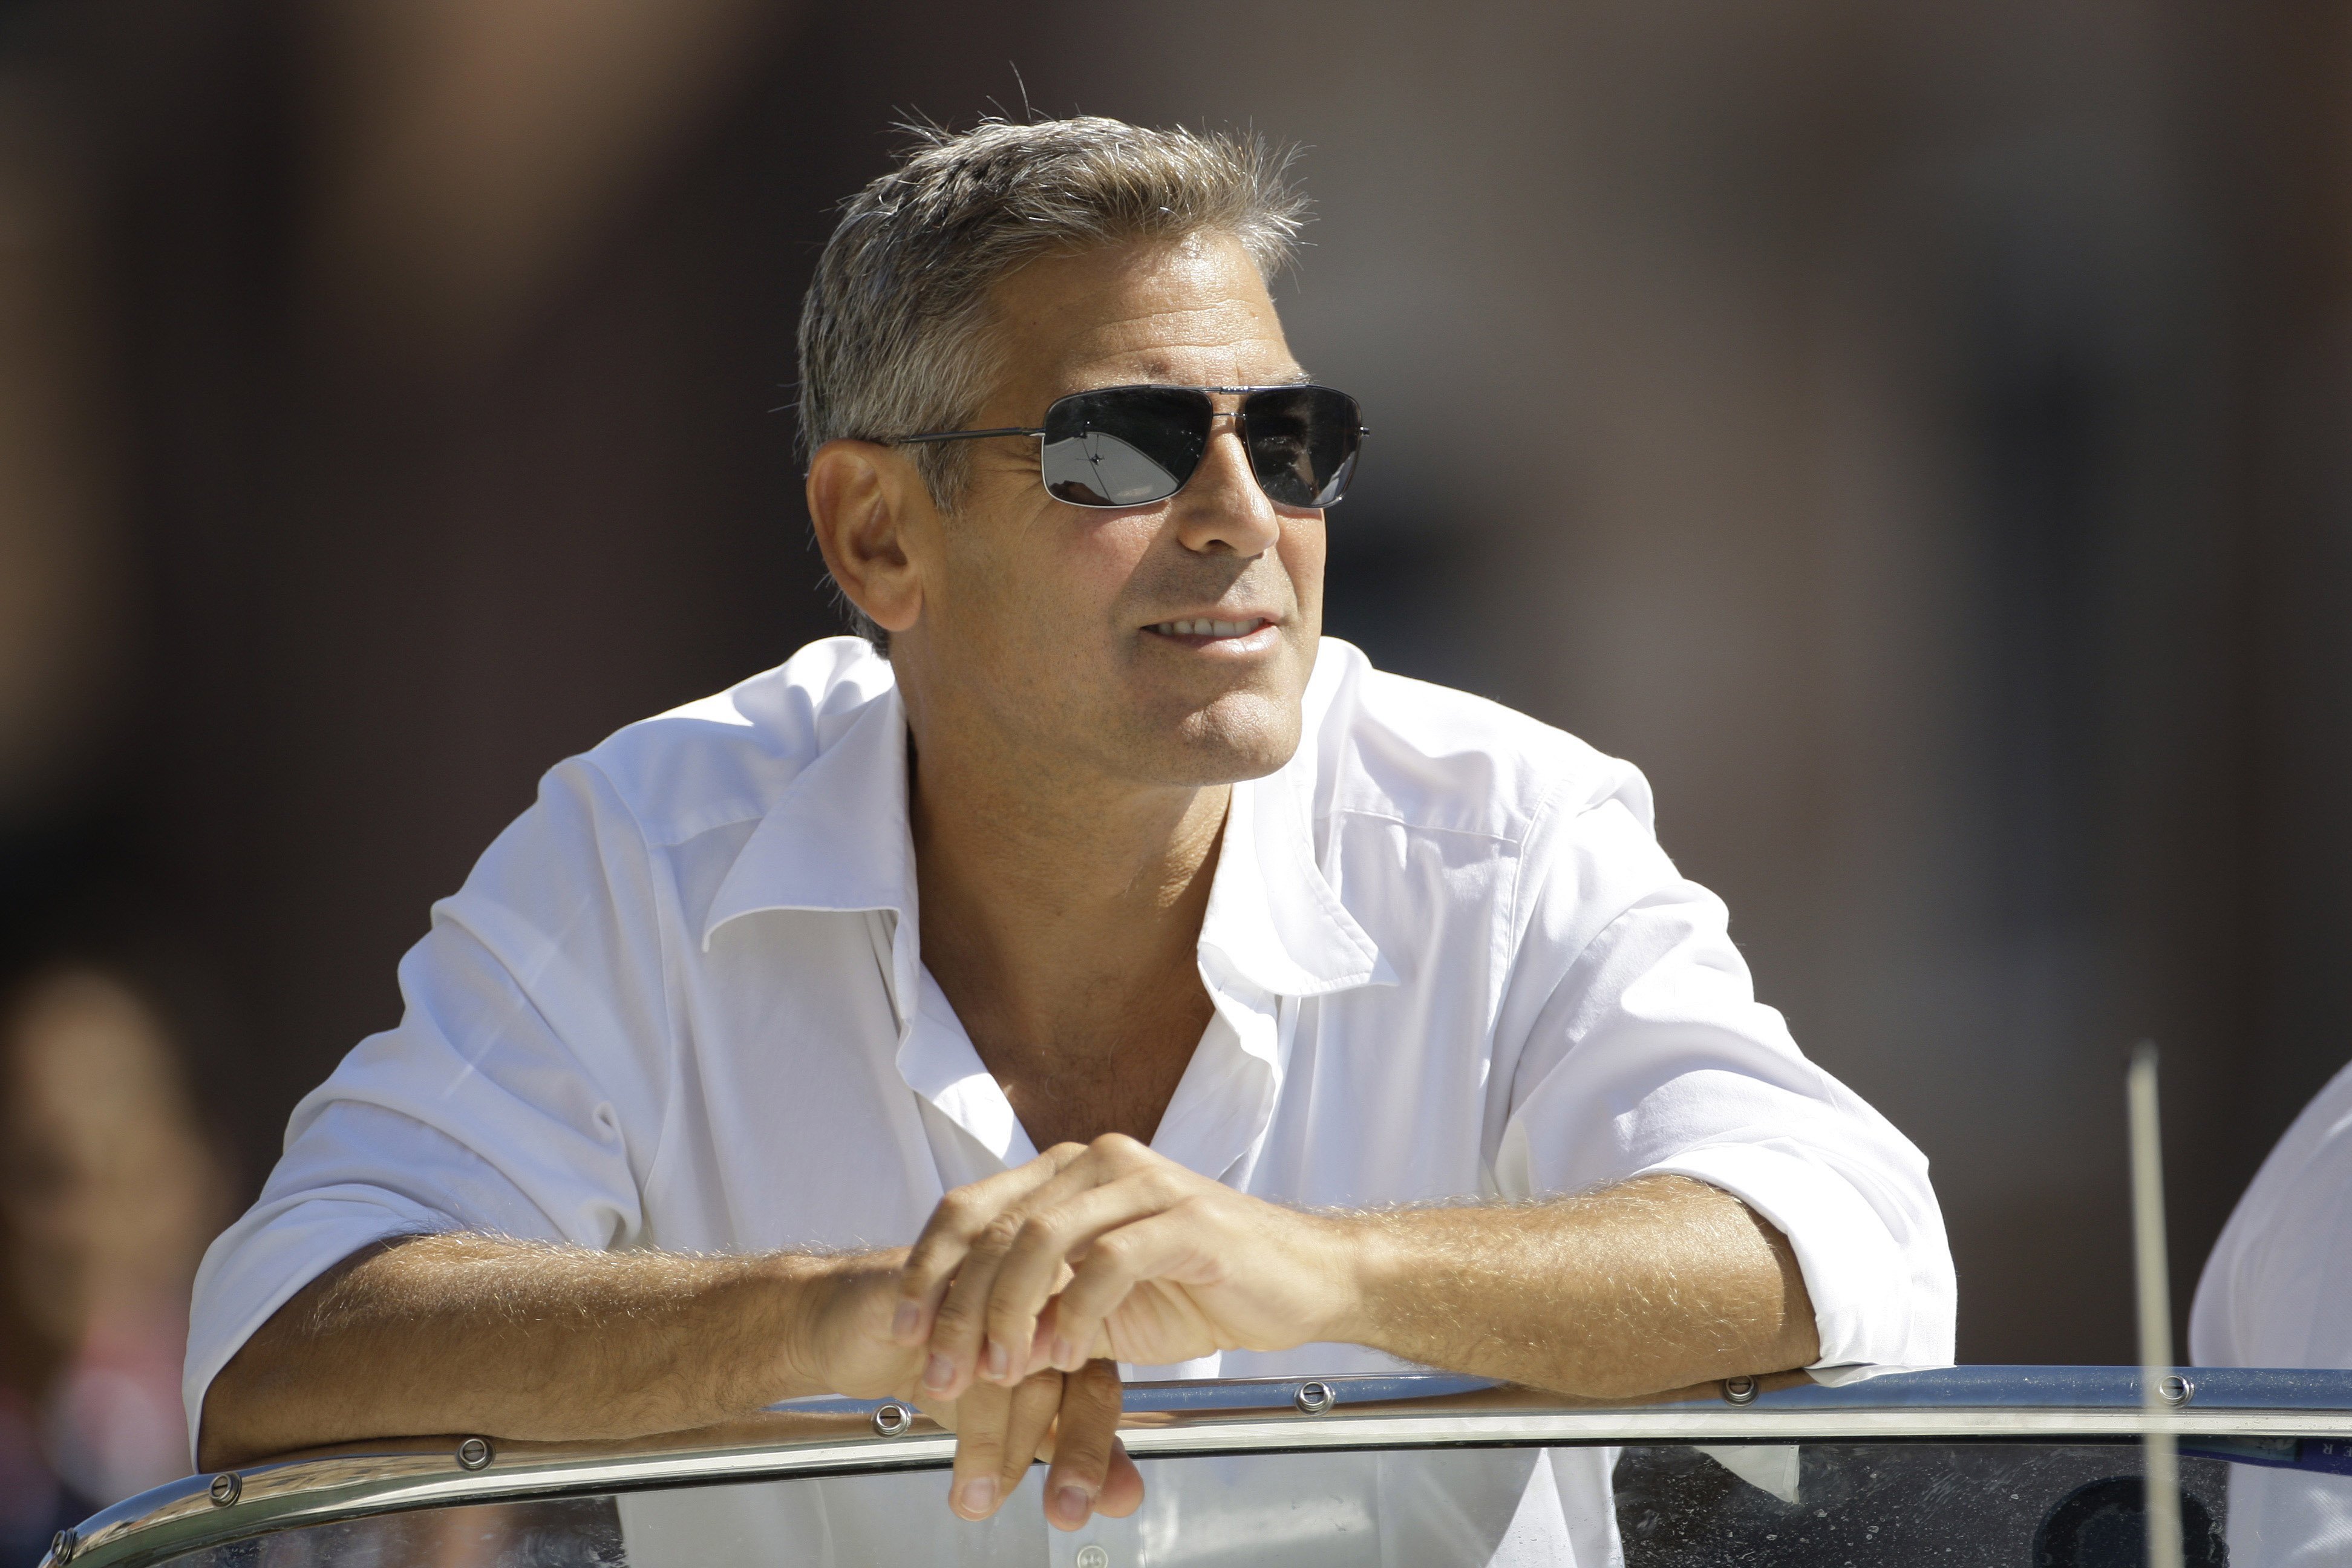 50 мужчин и 1. Джордж Клуни фото. Джордж Клуни очки. Джордж Клуни в 50 лет. Джордж Клуни в 40 лет.